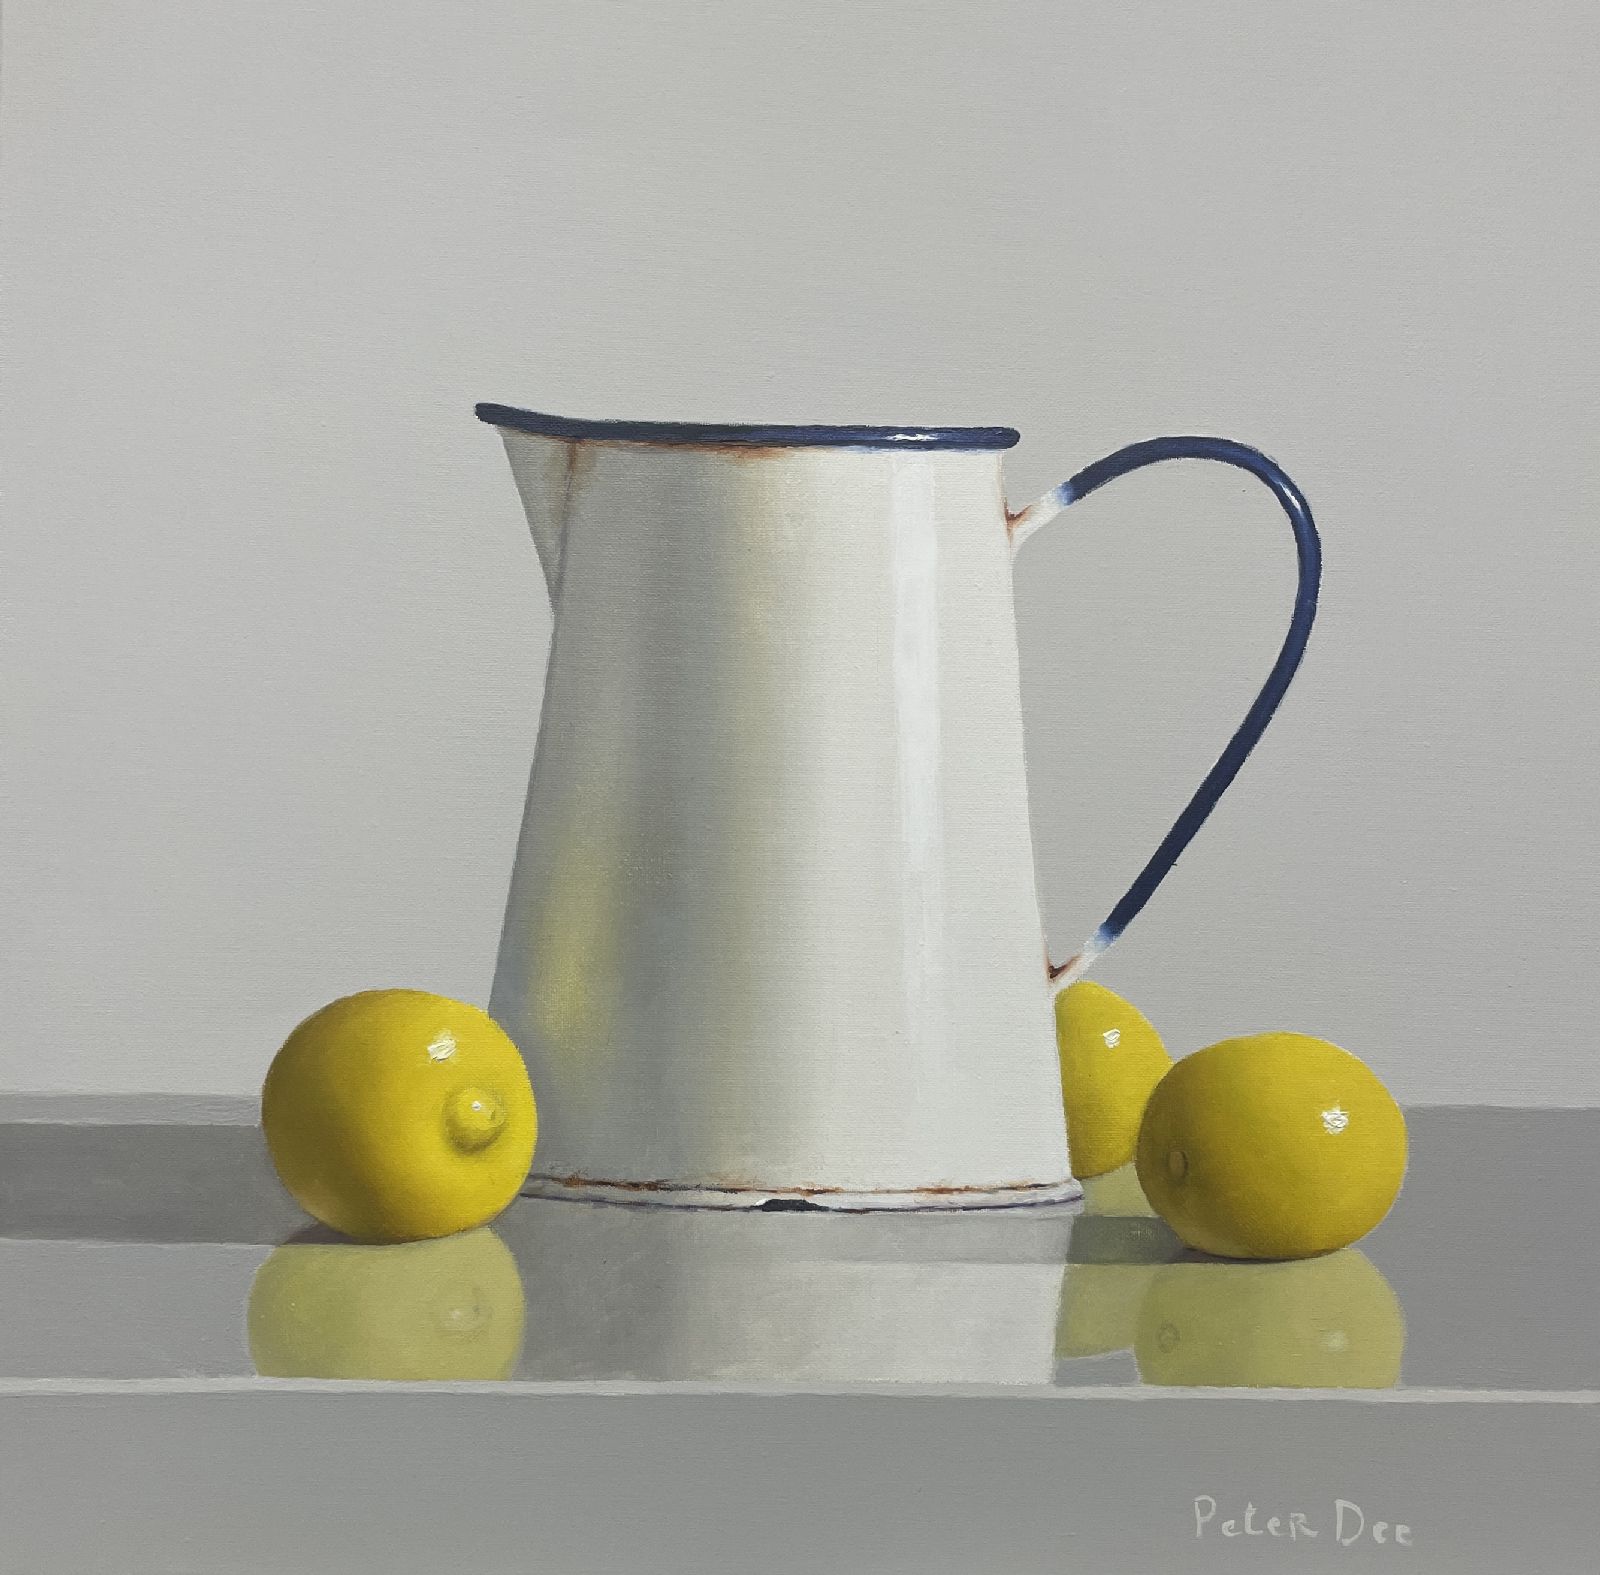 Peter Dee - Vintage Enamelware with Lemons